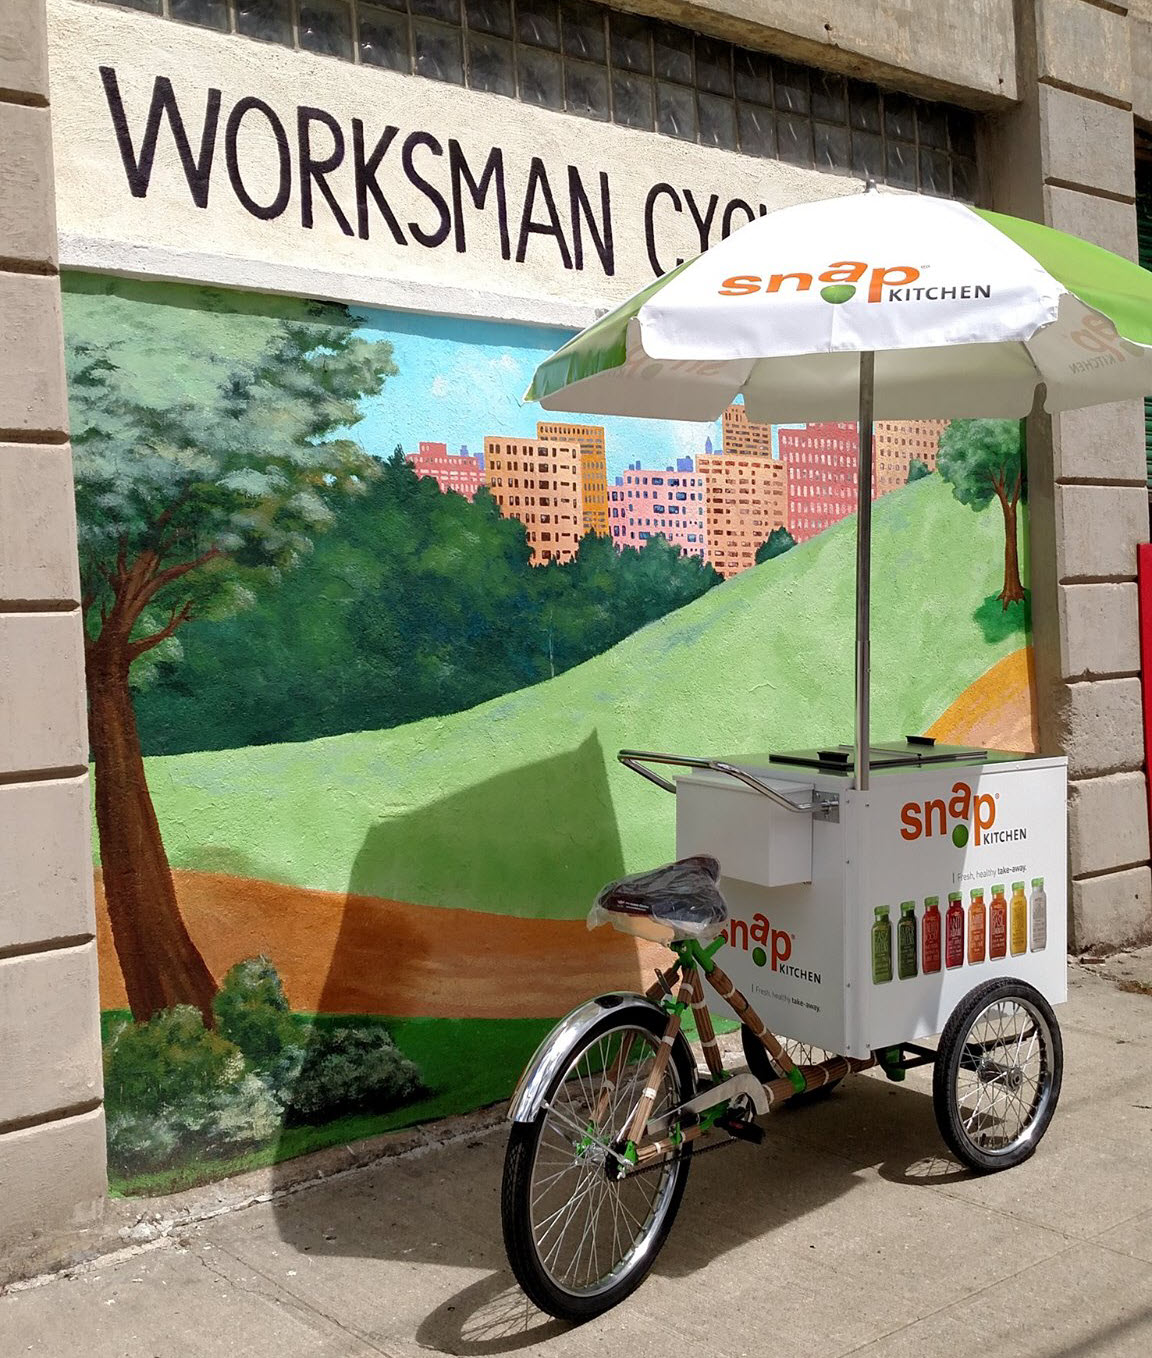 ice cream tricycle